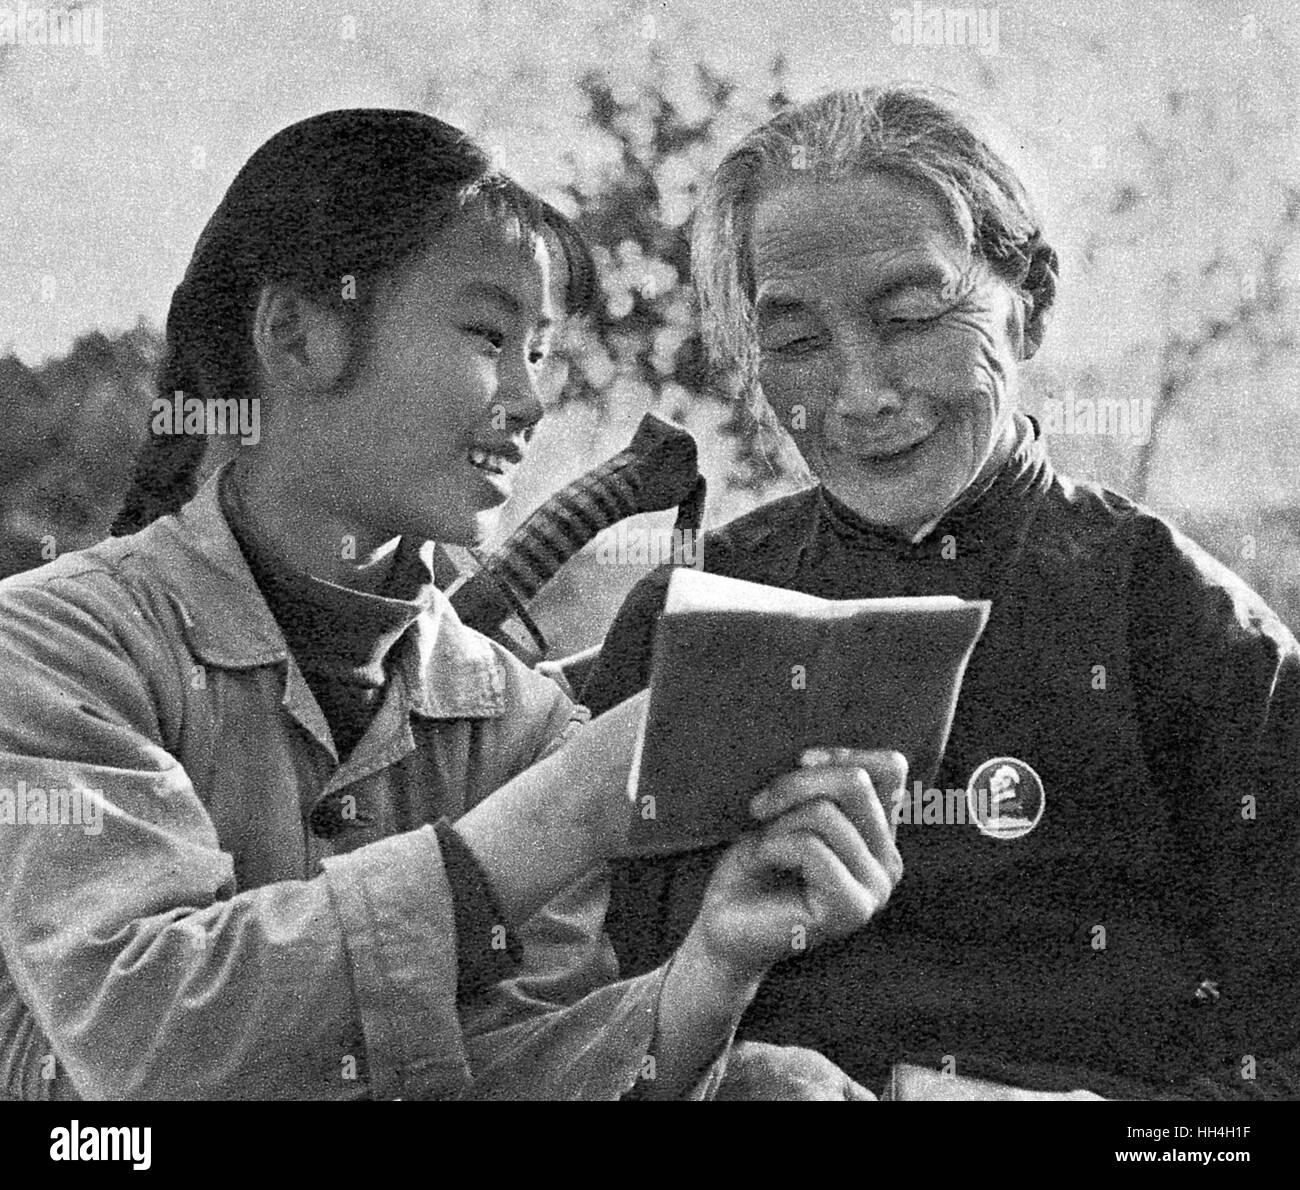 Giovane donna membro di un team di comunicazione, la lettura di Mao piccolo libro rosso con un povero agricoltore femmina durante la Rivoluzione Culturale era nella Cina comunista, così alfabetizzazione e la filosofia allo stesso tempo. Foto Stock